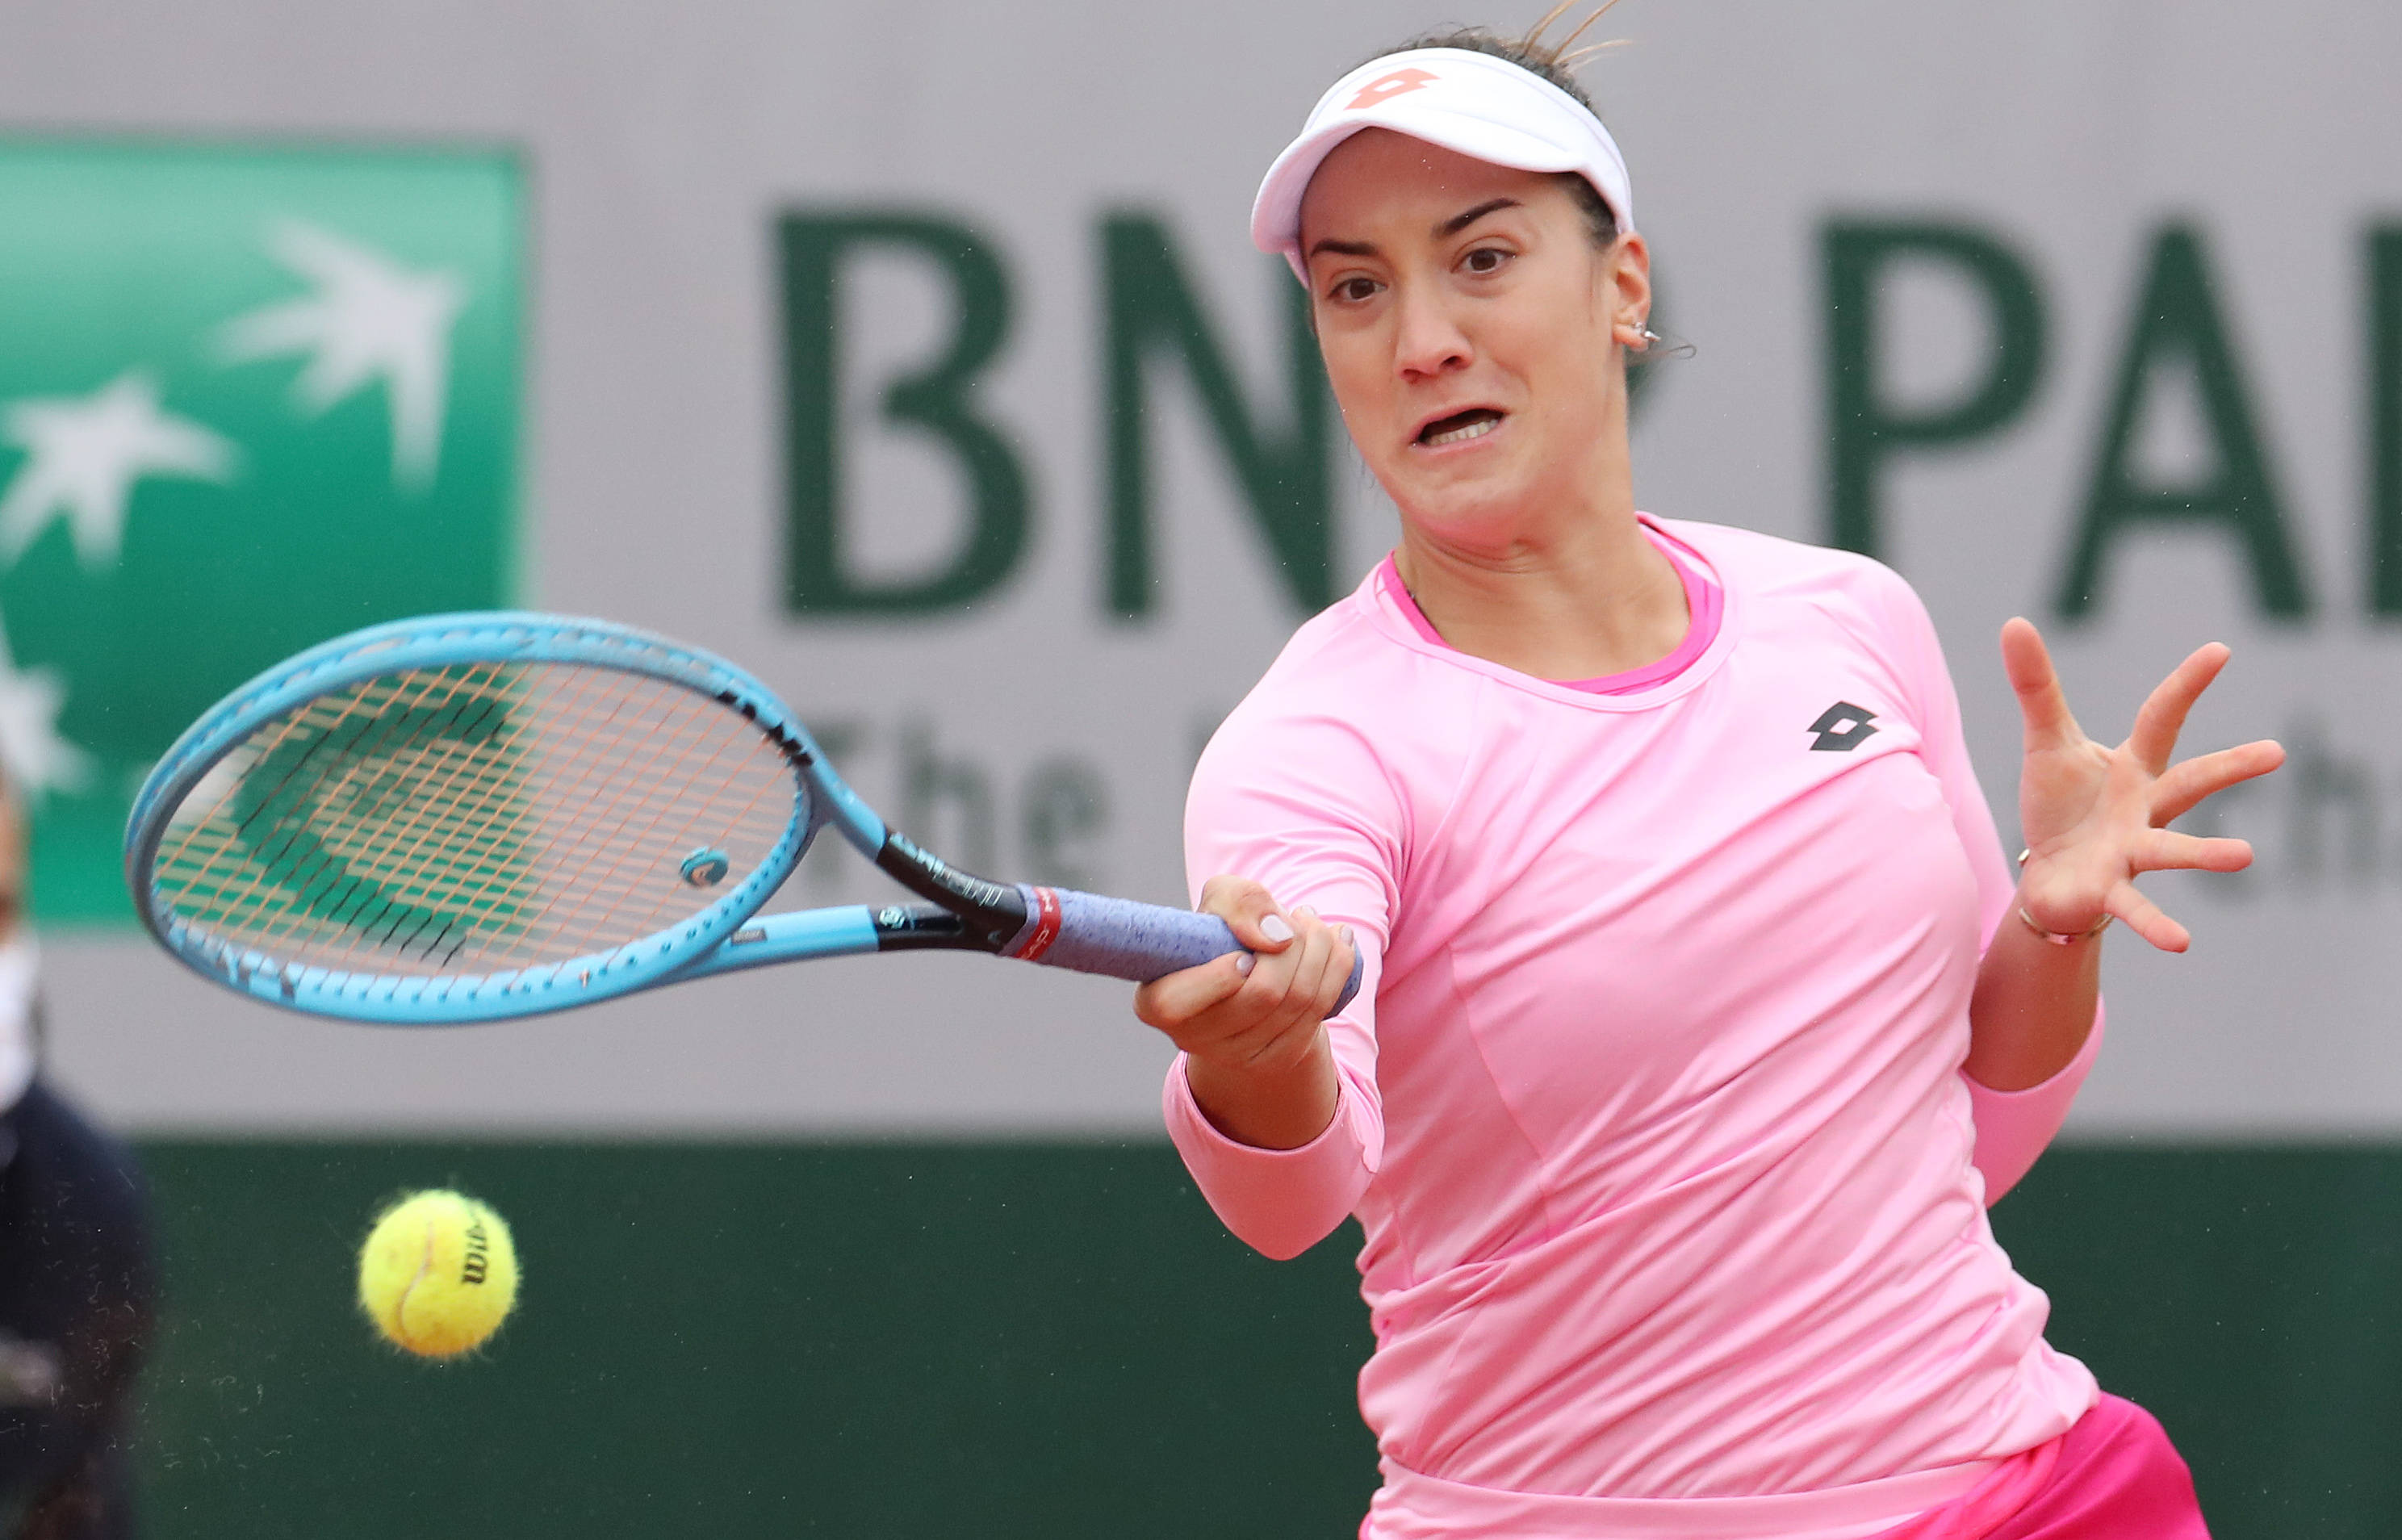 法国网球公开赛女单首轮比赛中,白俄罗斯选手阿扎伦卡以2比0战胜黑山